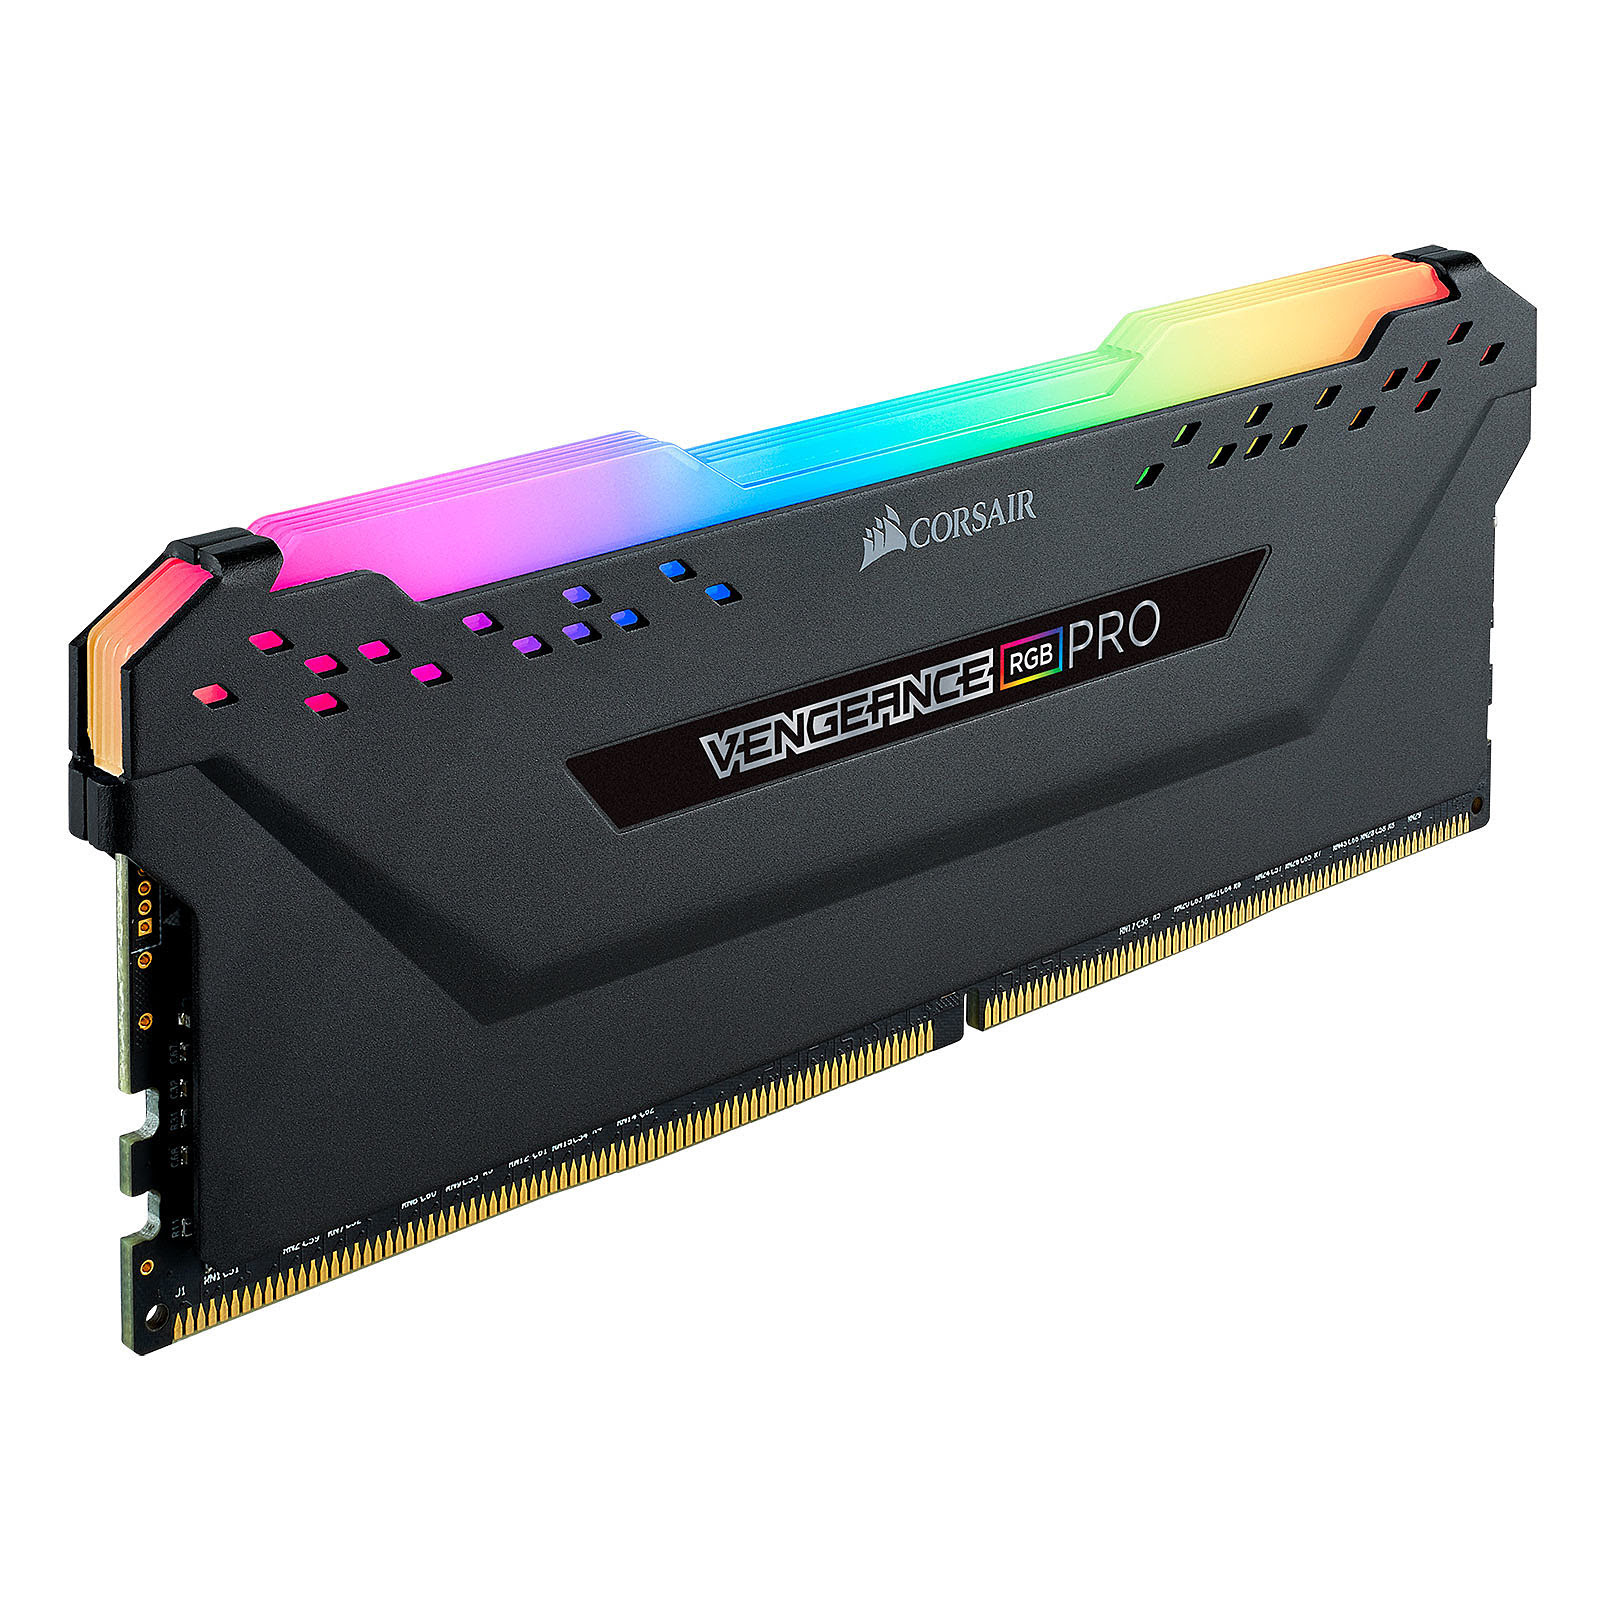 Corsair Vengeance RGB Pro 16Go (2x8Go) DDR4 3200MHz - Mémoire PC Corsair  sur